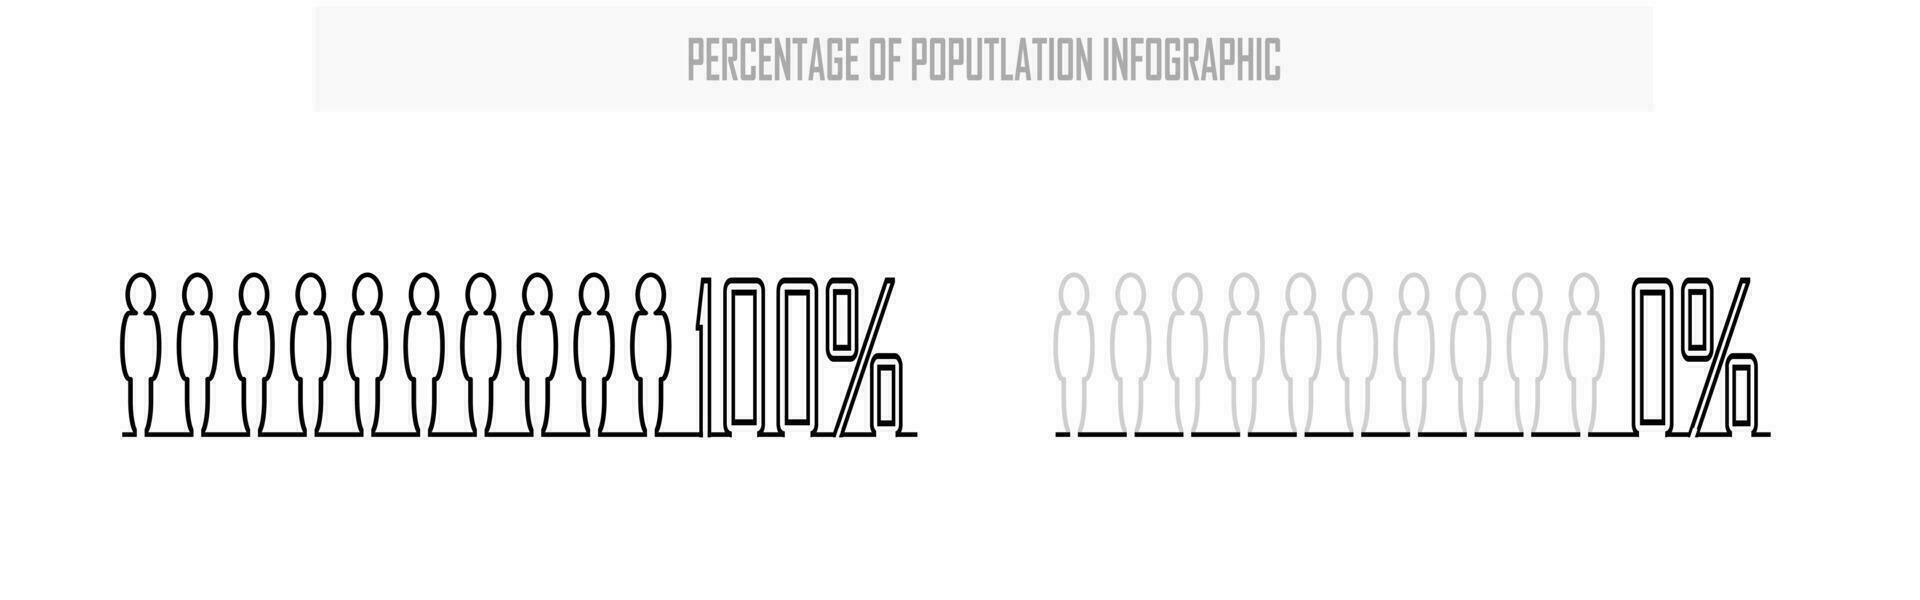 porcentaje de el población, personas demografía, diagrama, infografia concepto, y elemento diseño. el proporción de diez desde 0 0 a 100 por ciento. humano cuerpo silueta. vector